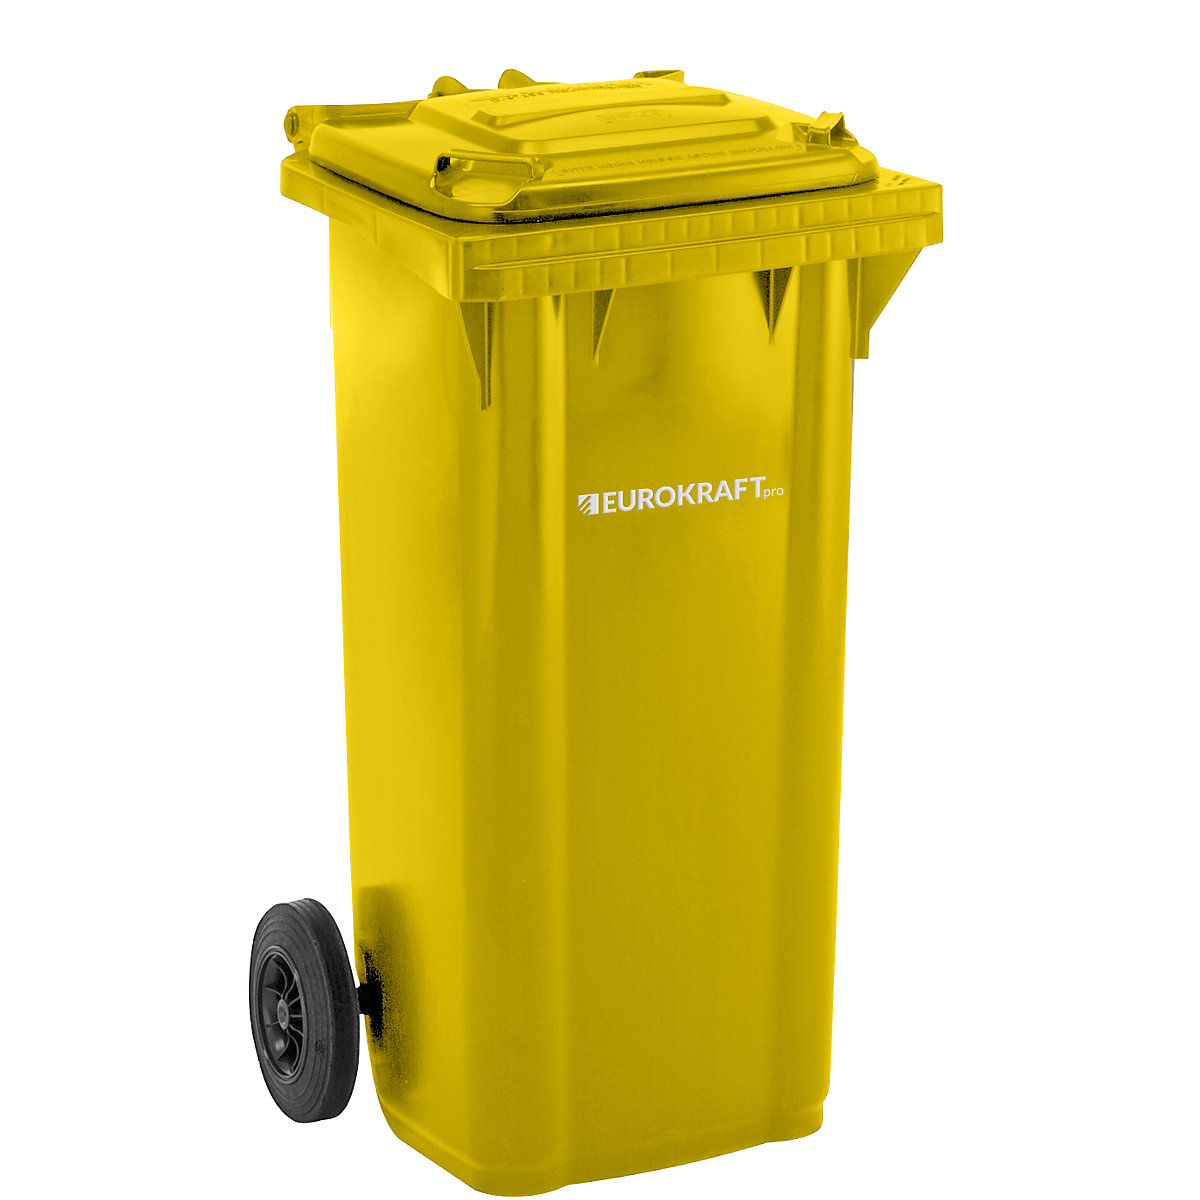 Contentor de lixo em plástico DIN EN 840 – eurokraft pro, volume 120 l, LxAxP 505 x 1005 x 555 mm, amarelo, a partir de 5 unid.-3